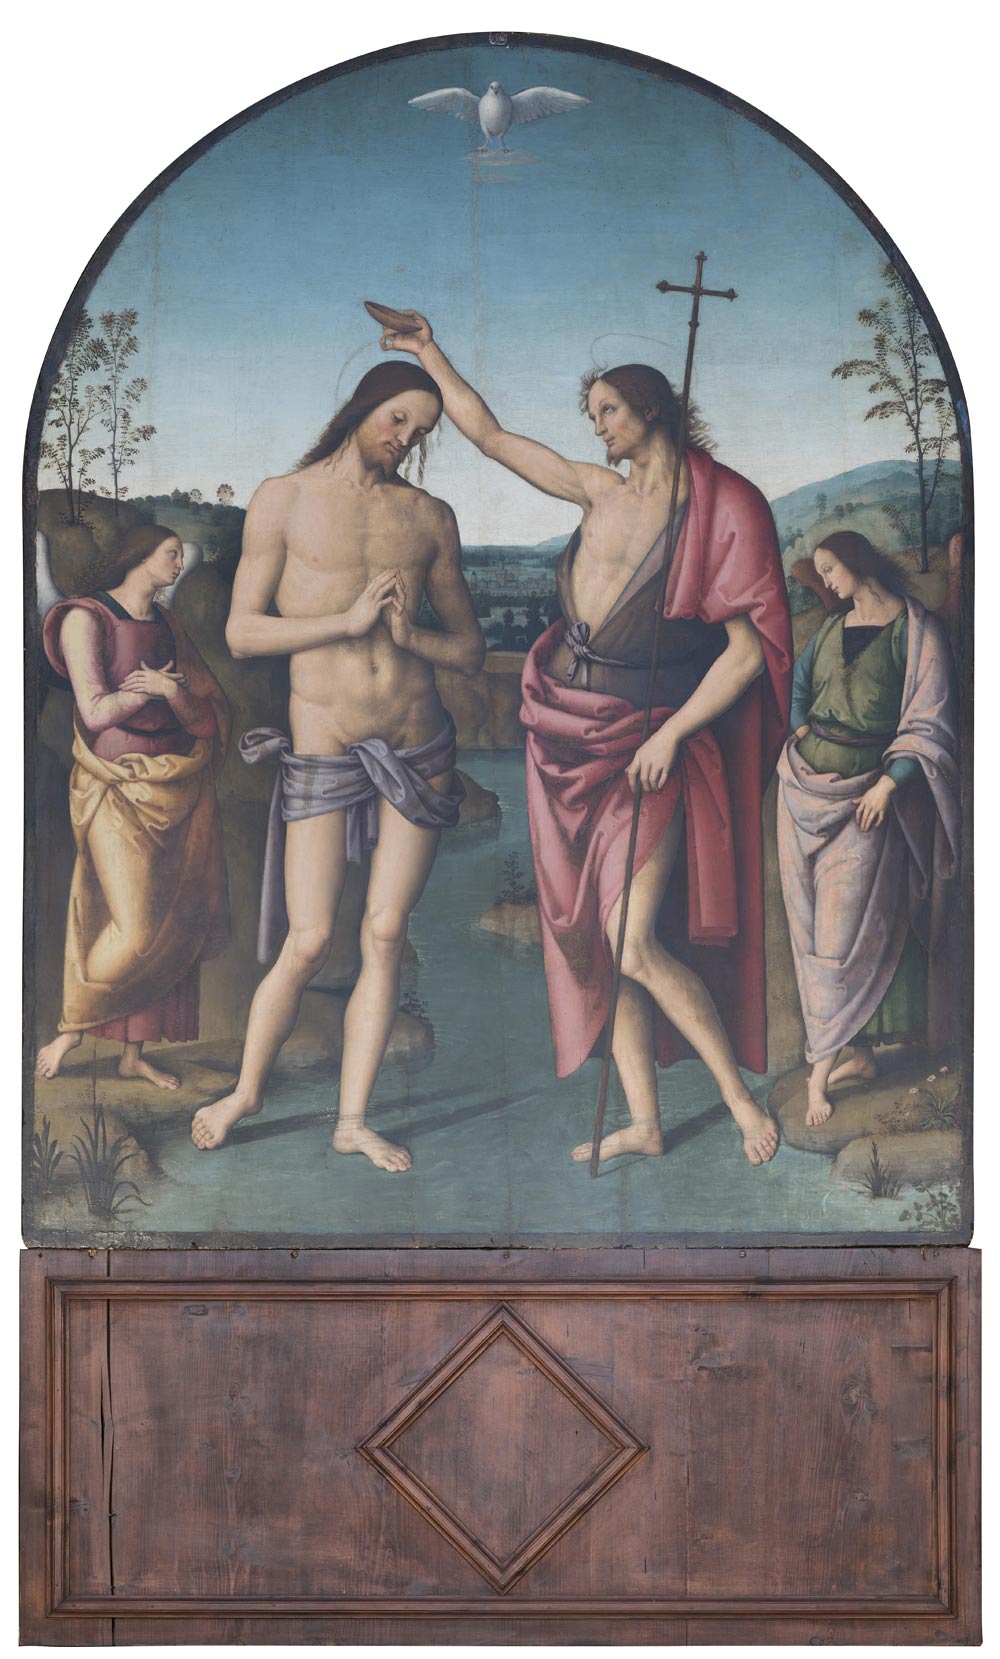 Perugino, Battesimo di Cristo (1495-1510; olio su tavola, 160 x 210 cm; Città della Pieve, Cattedrale dei Santi Gervasio e Protasio)